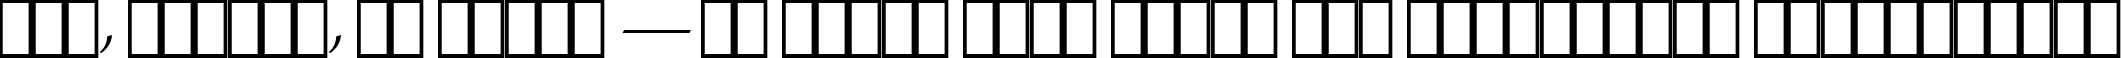 Пример написания шрифтом ITC Zapf Chancery Medium Italic текста на украинском